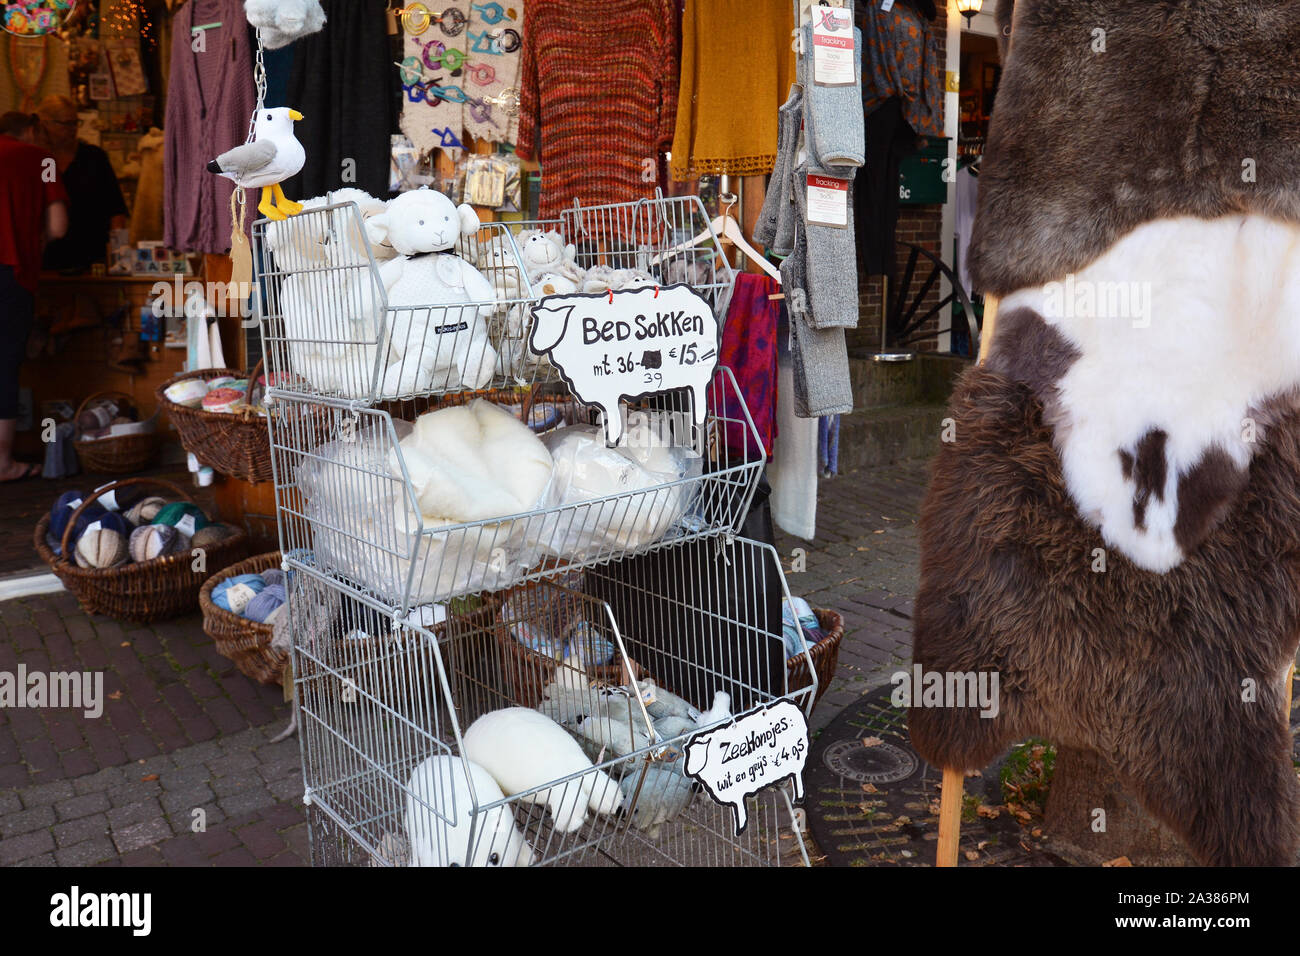 Den Burg, Texel / Paesi Bassi - Agosto 2019: turistici negozio di vendita di merci locali likesocks e Peluche giocattoli fatti di lana di pecora di Texel Foto Stock